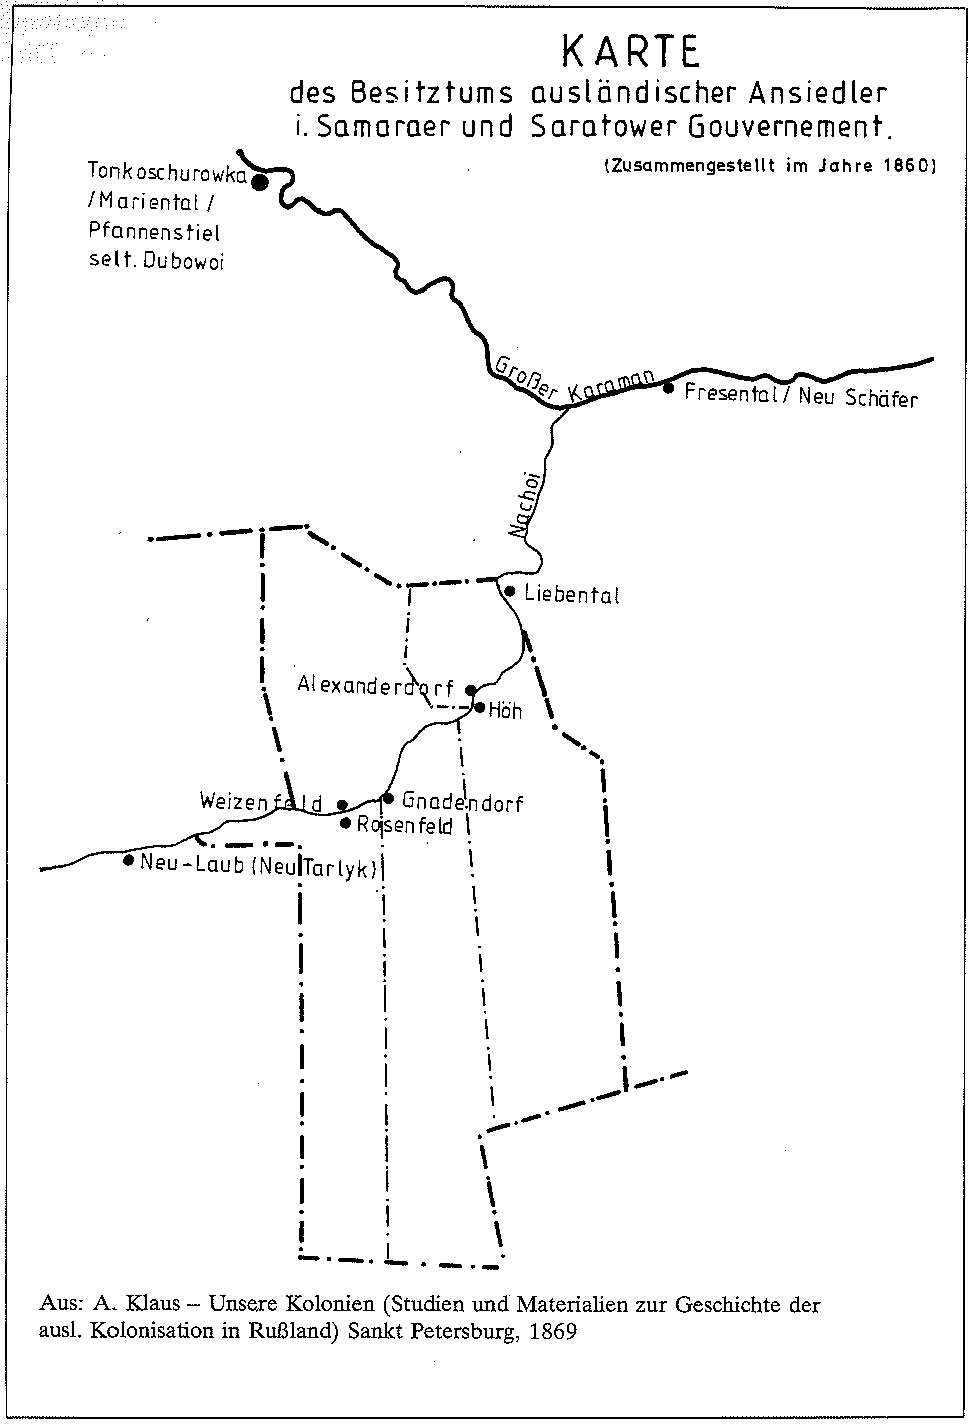 Map of Colonies along the Nachoi River (1860) Source: Die Namengebung zweier Wolgadeutscher Dörfer, 1983 (p.14).